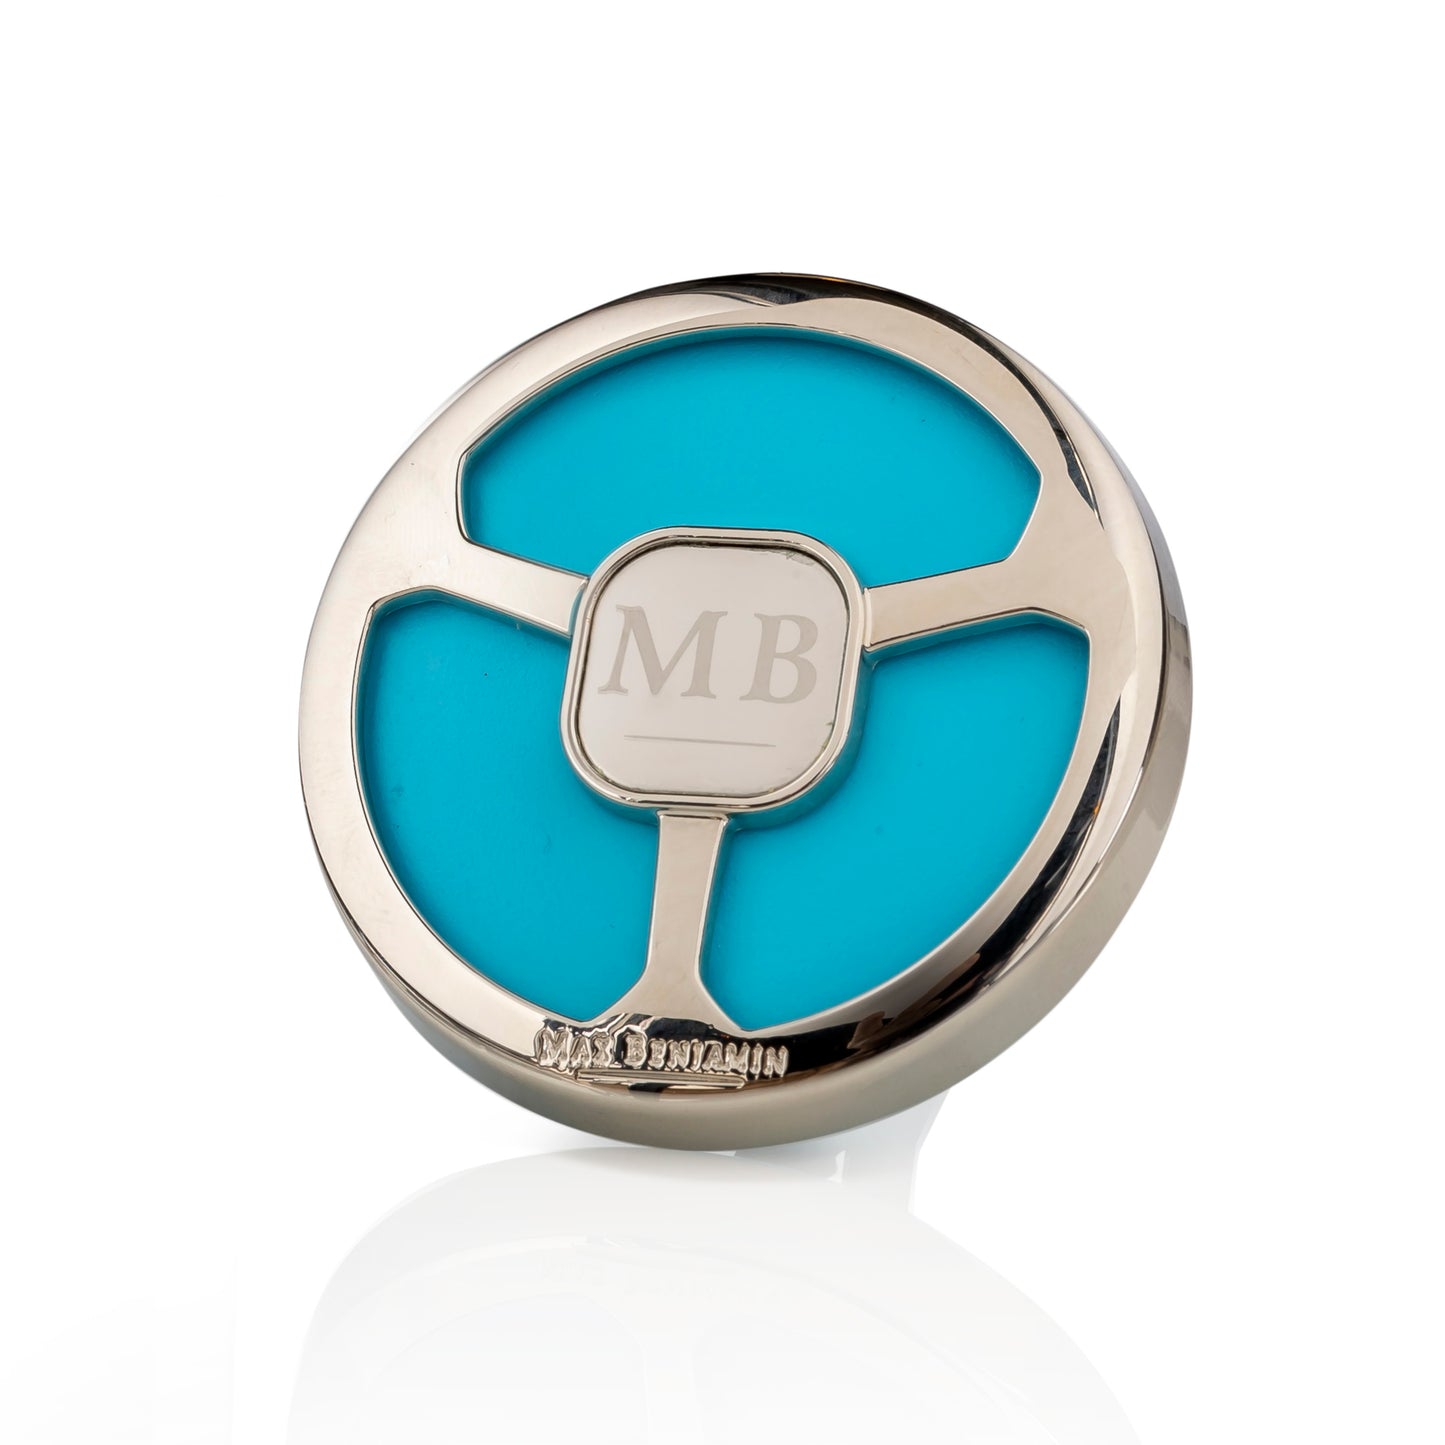 Blue Azure Complete Car Fragrance - Max Benjamin